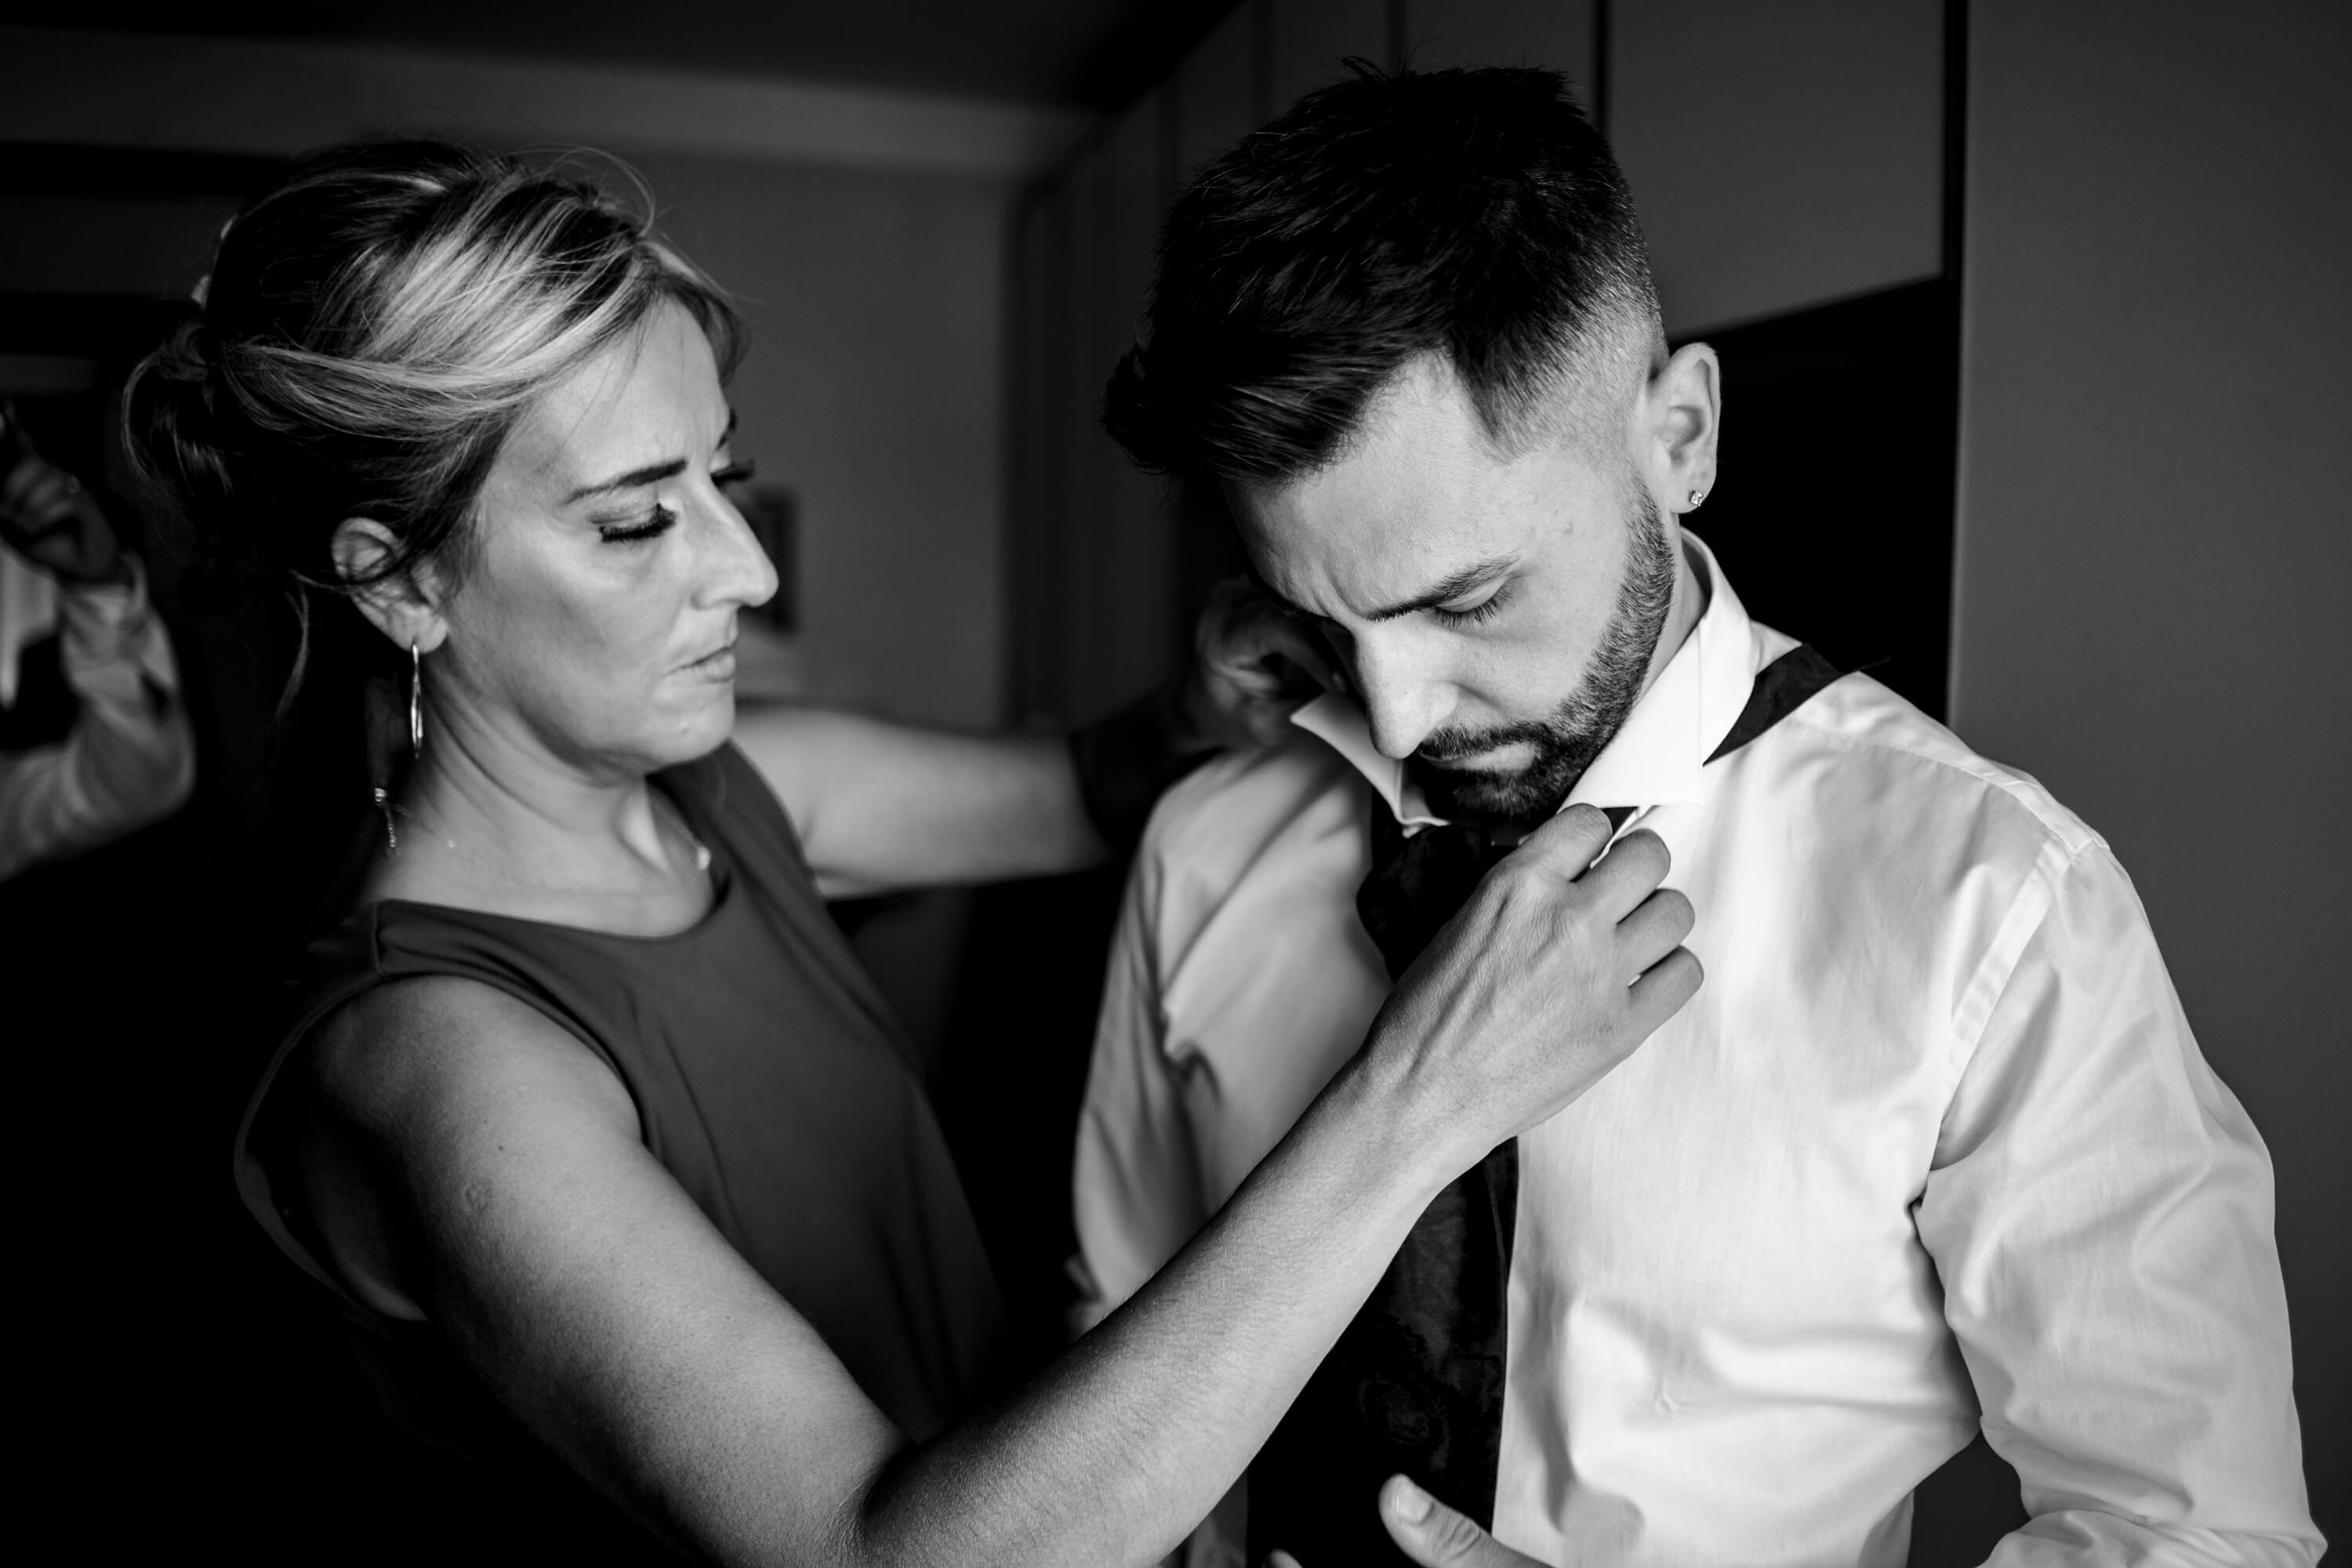 preparazione dello sposo aiutato dalla mamma a mettere la cravatta.